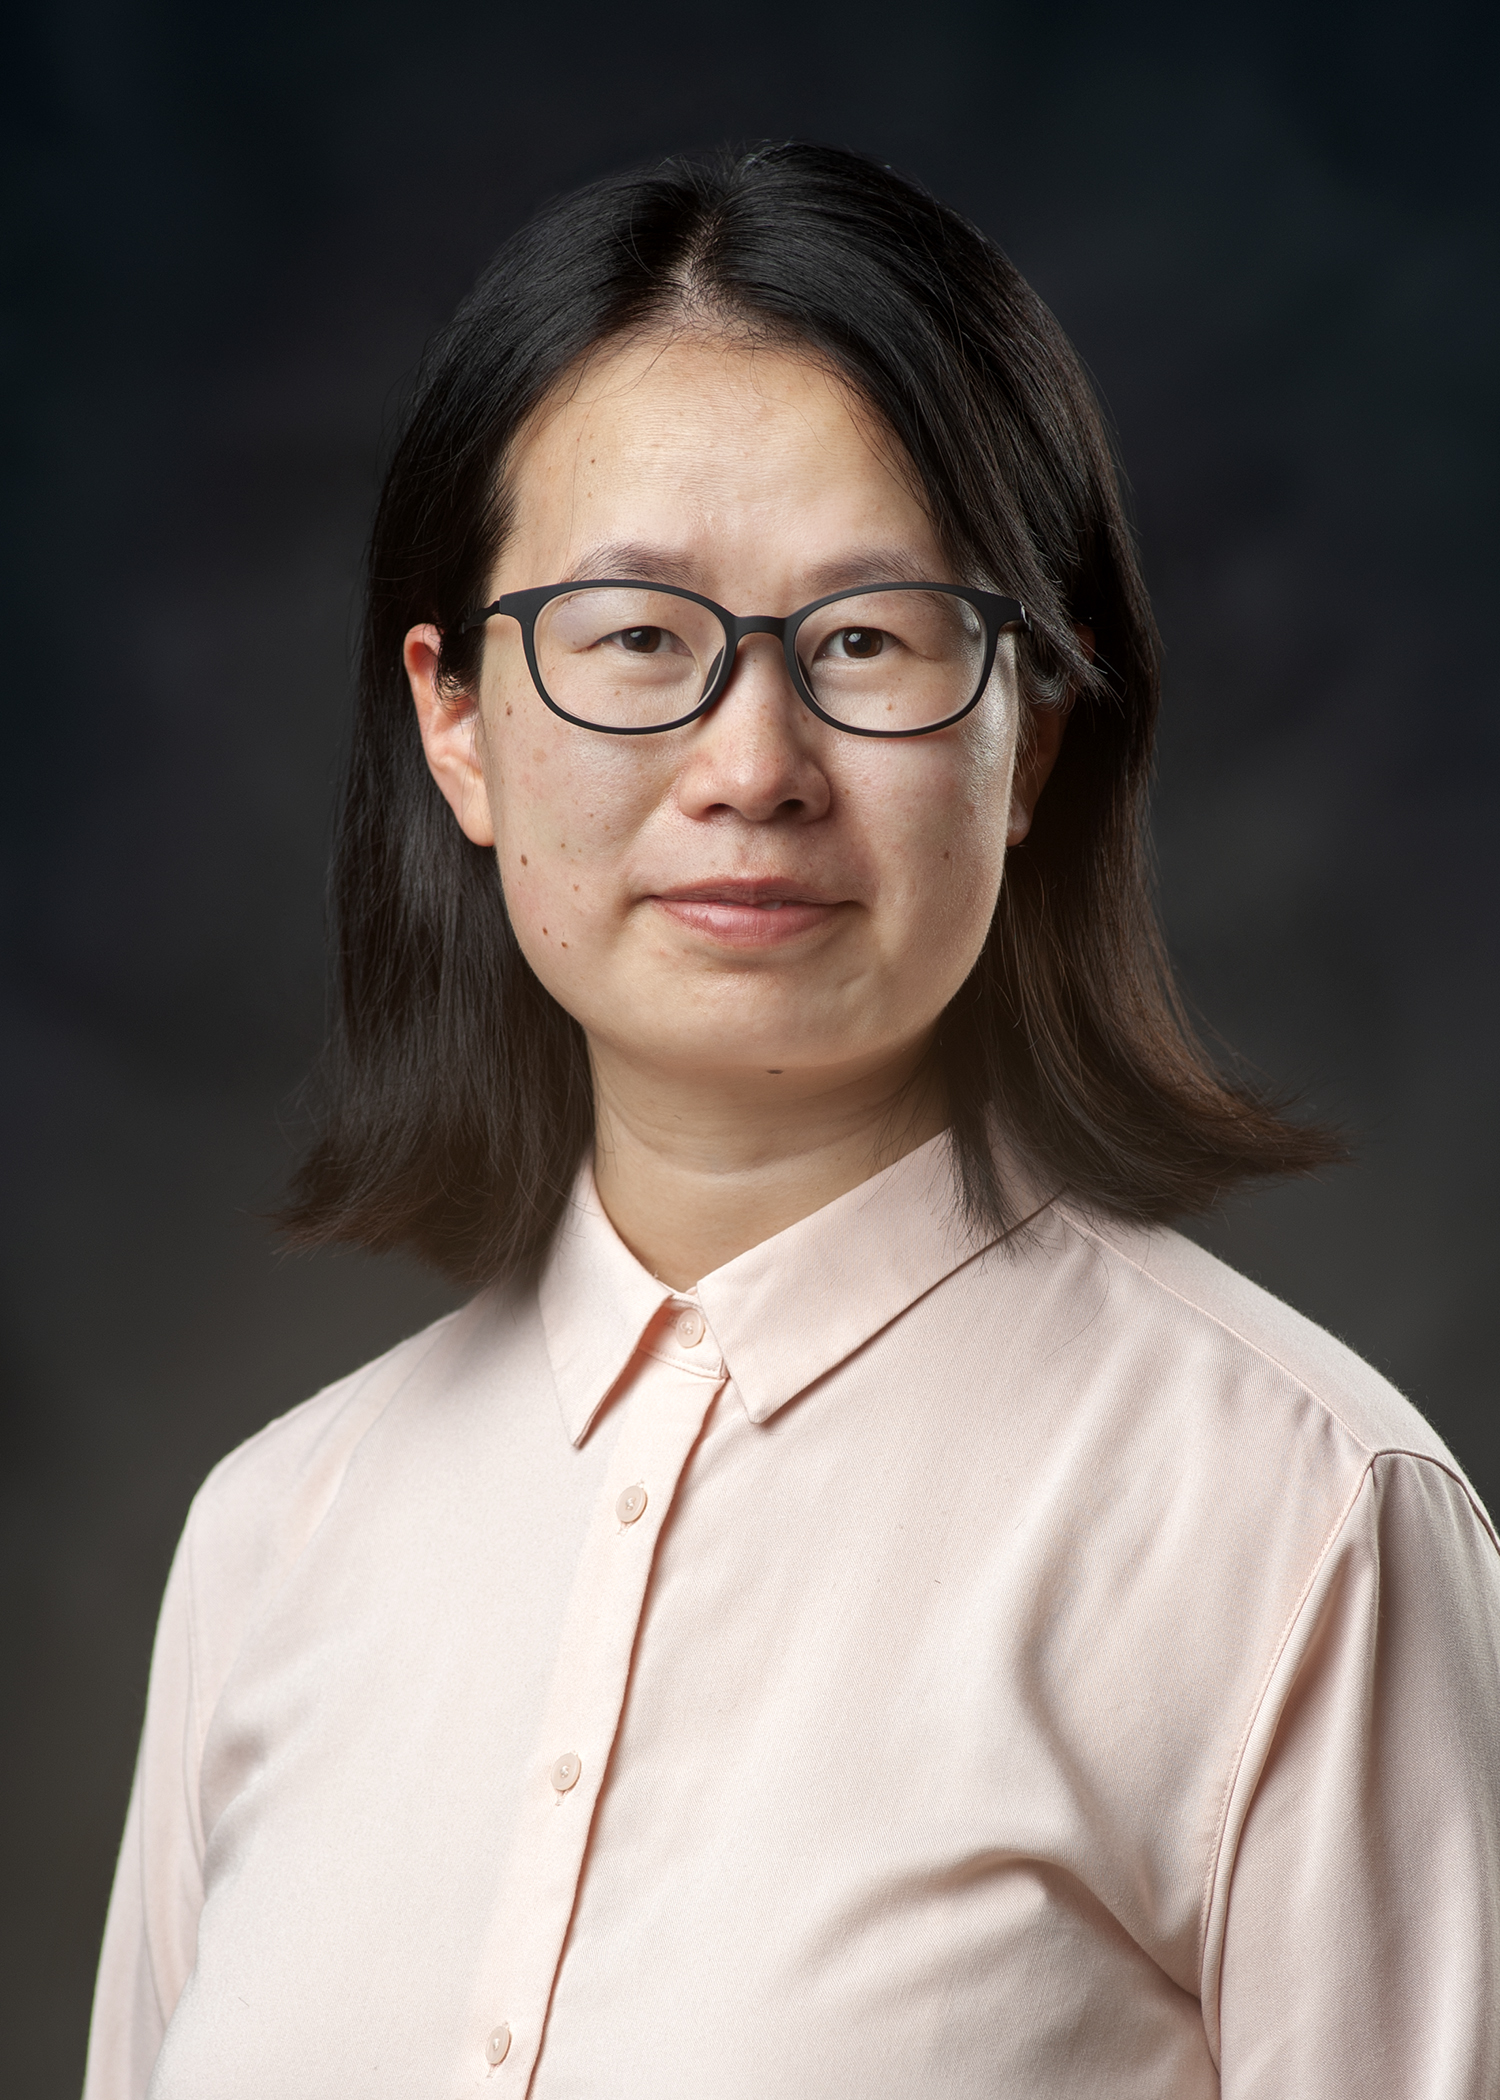 Dr. Jing Hu